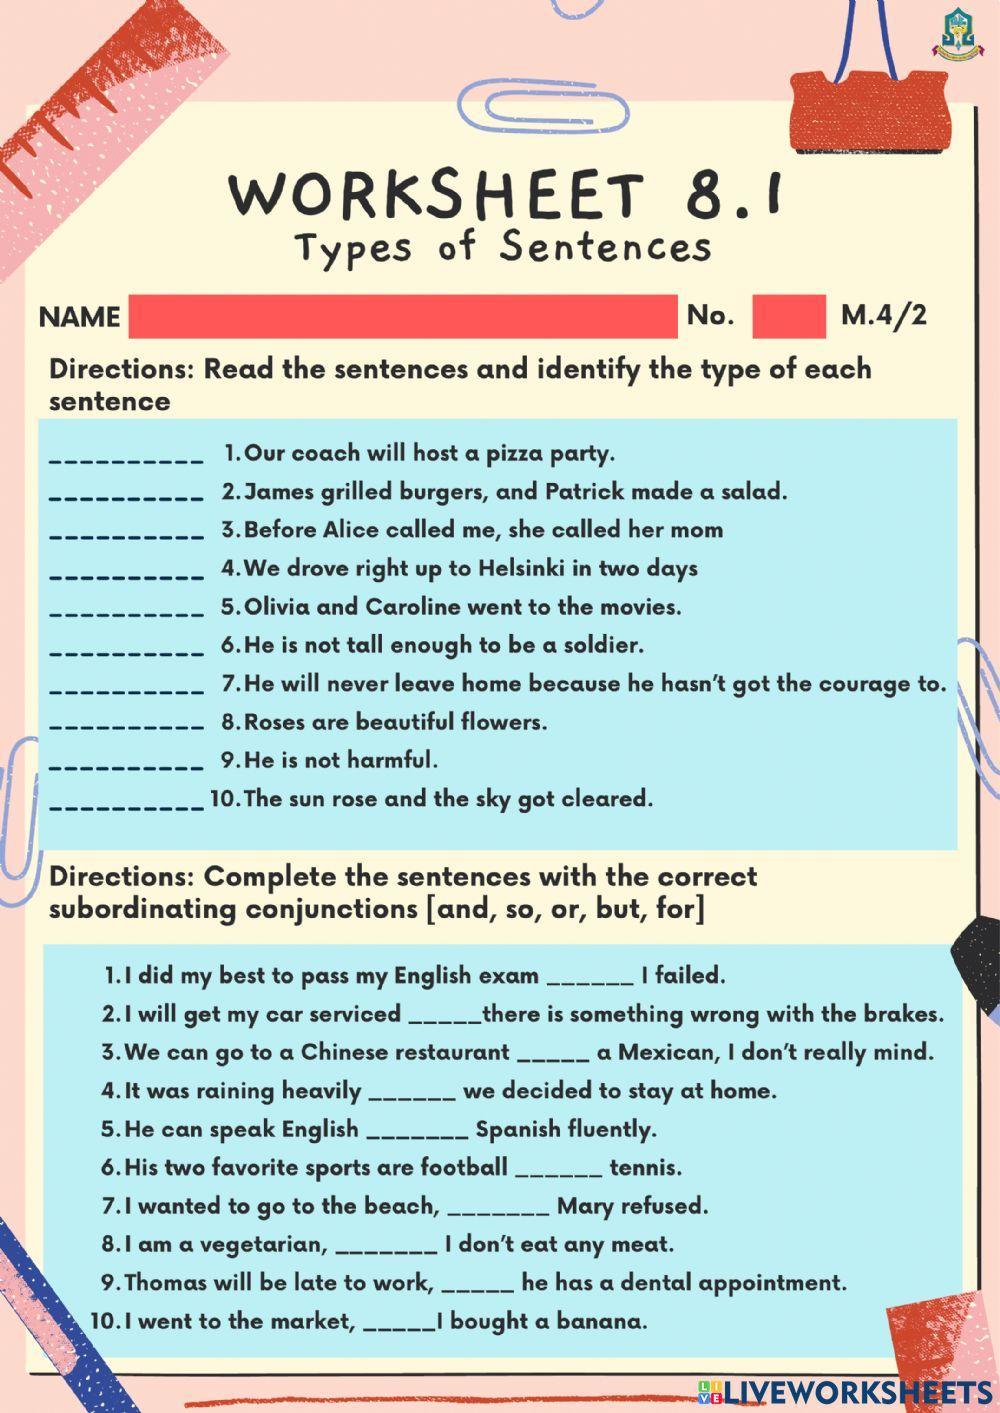 Worksheet 8.1 Types of Sentences